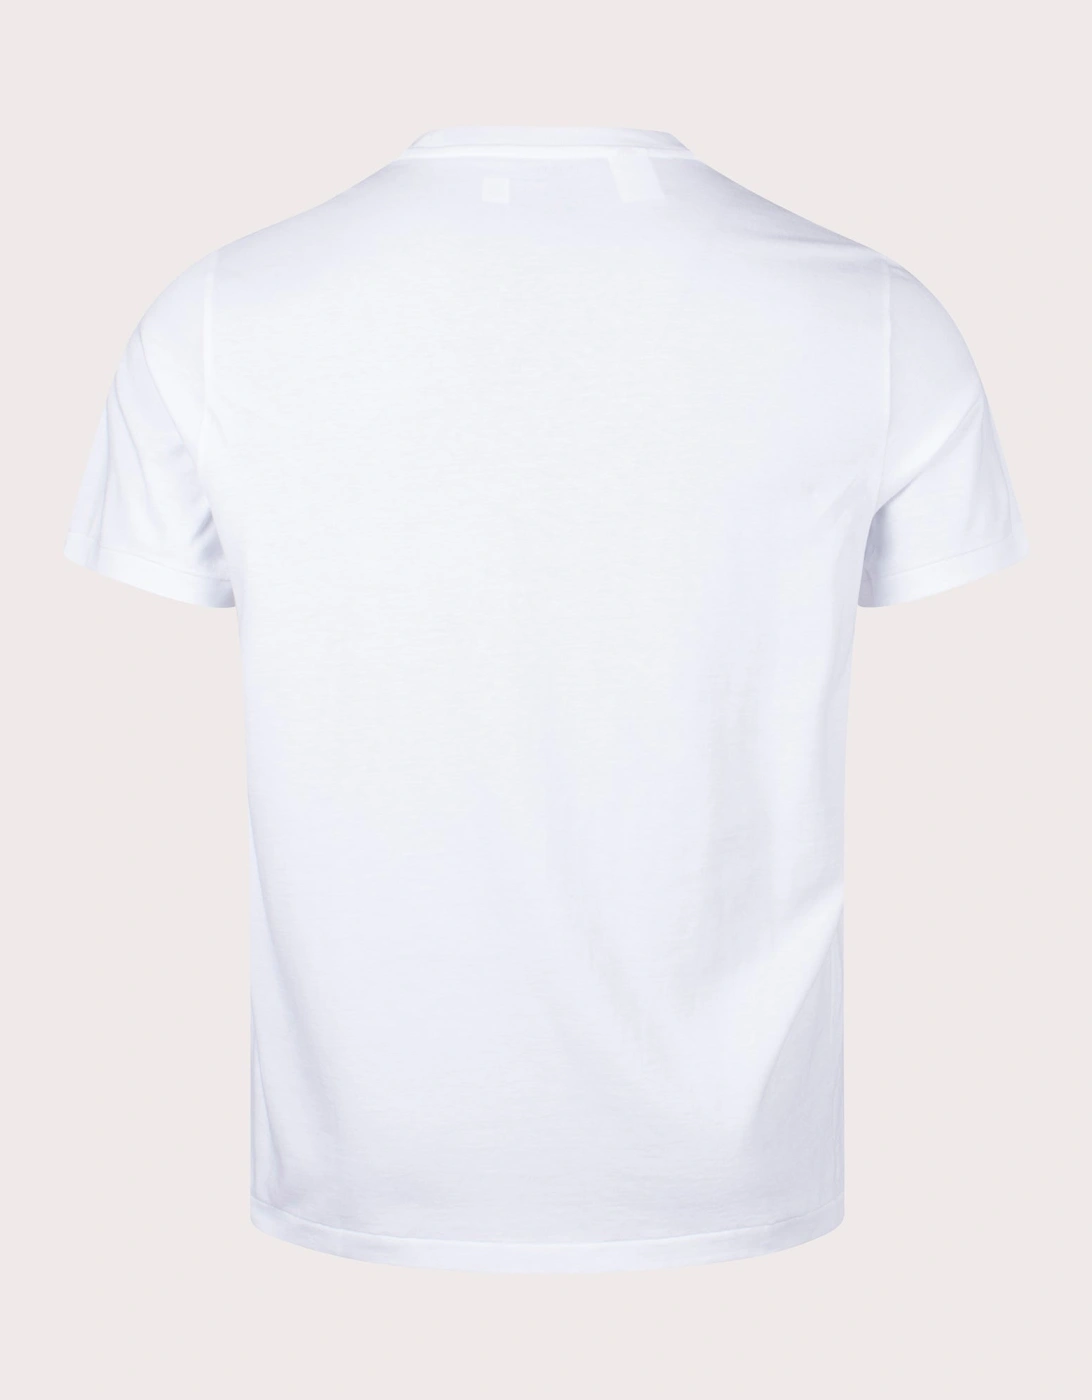 Lightweight Loungewear T-Shirt